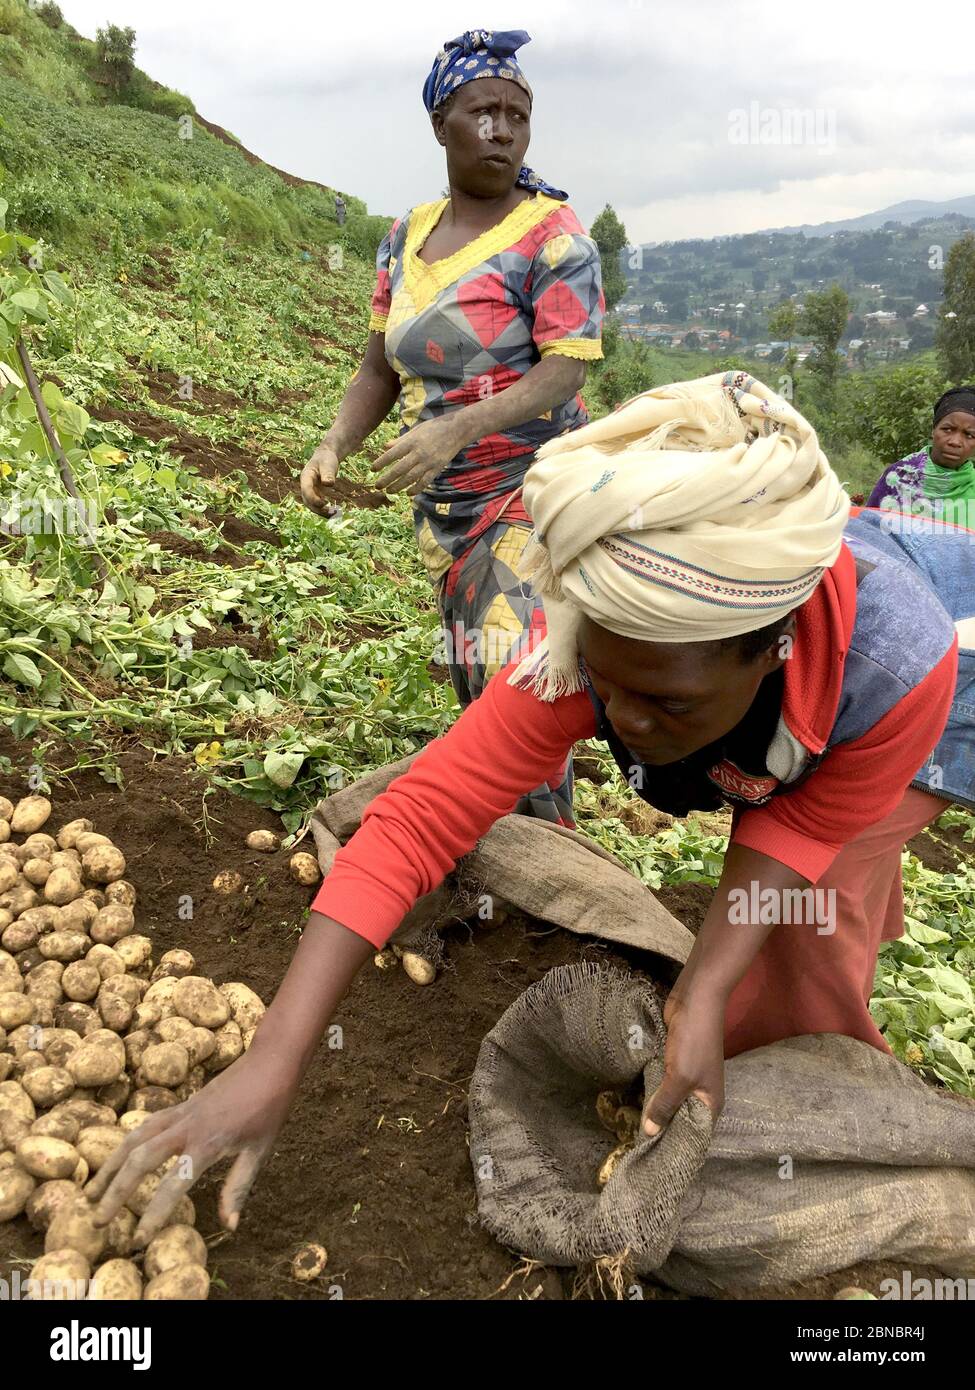 12 de julio de 2019 - Kisungu, Ruanda: Agricultores de subsistencia en África central, Ruanda, cosechando papas Foto de stock